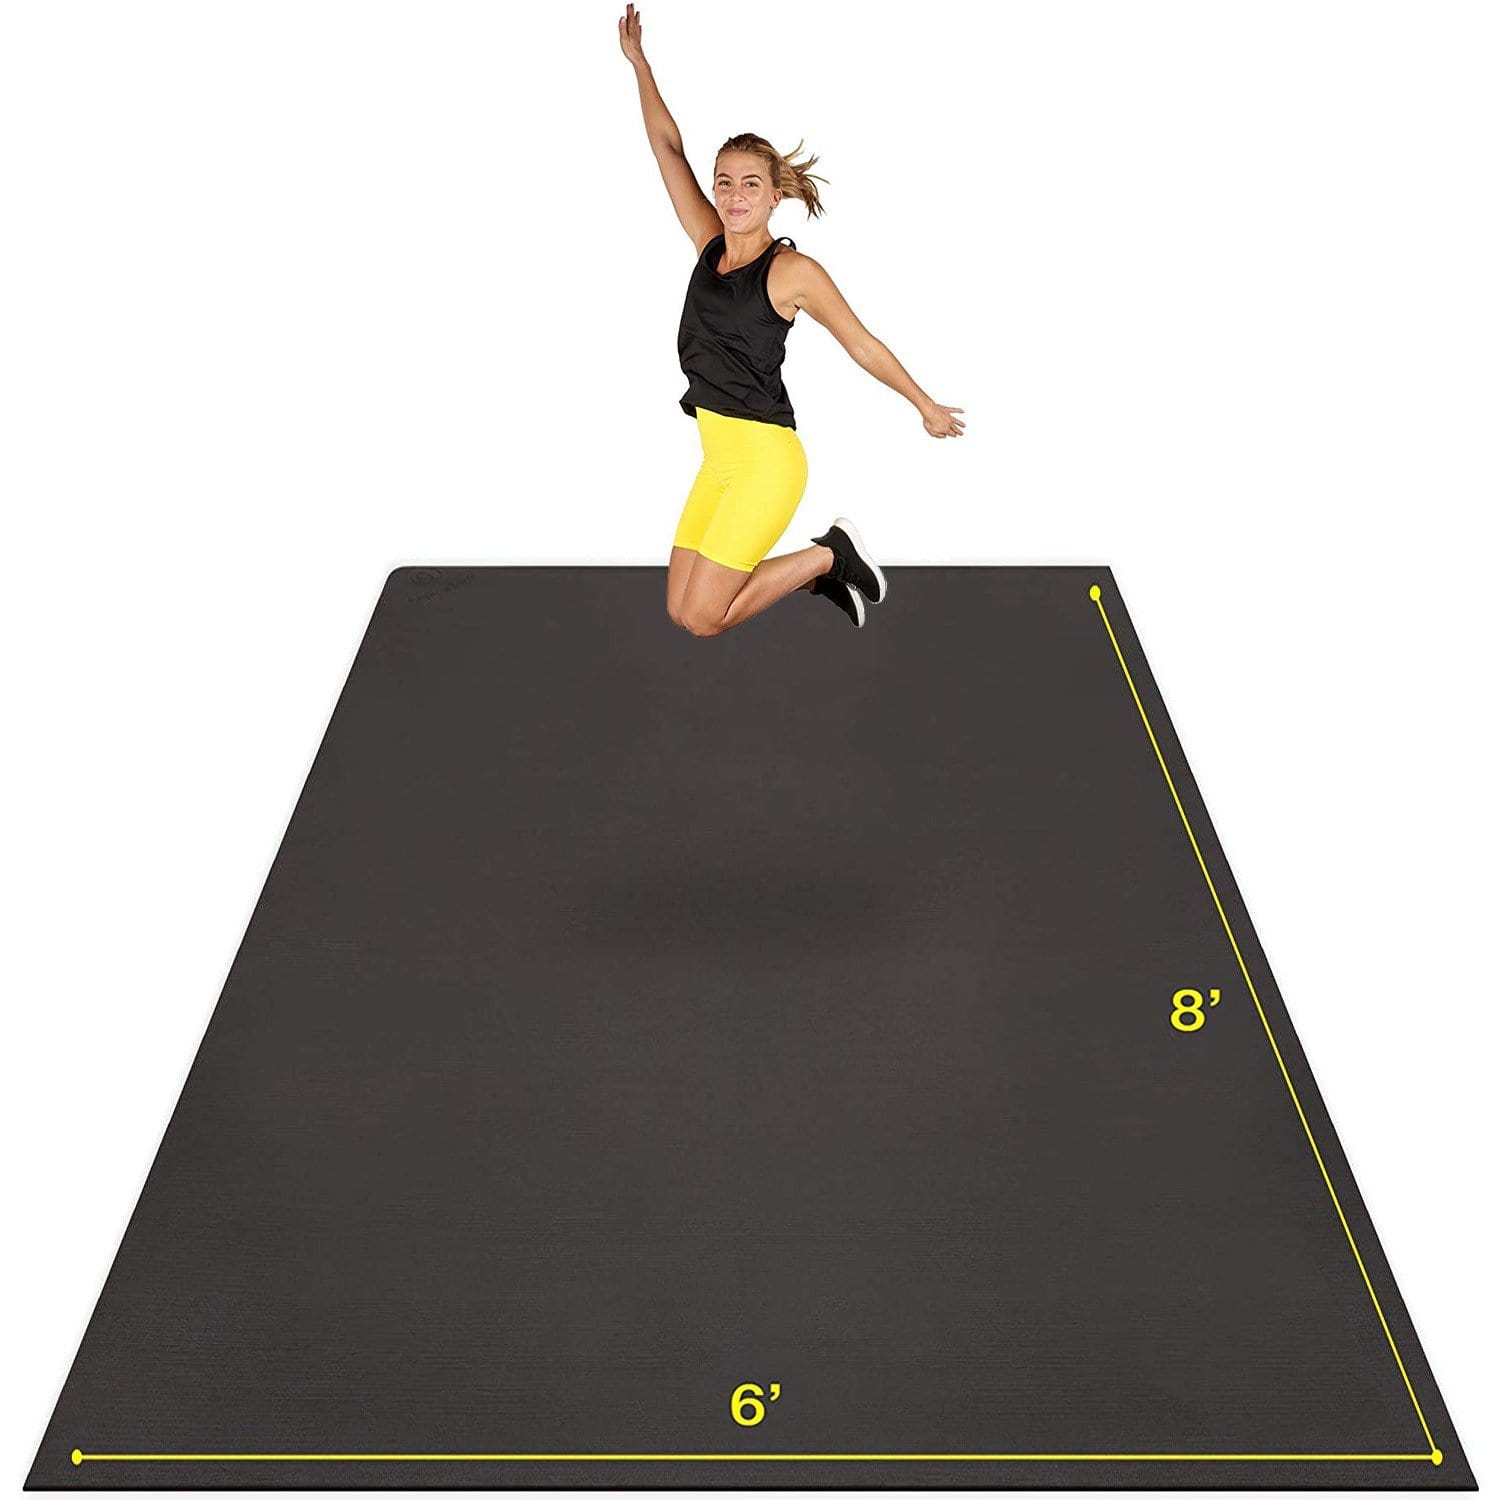 6 x 8 exercise mat